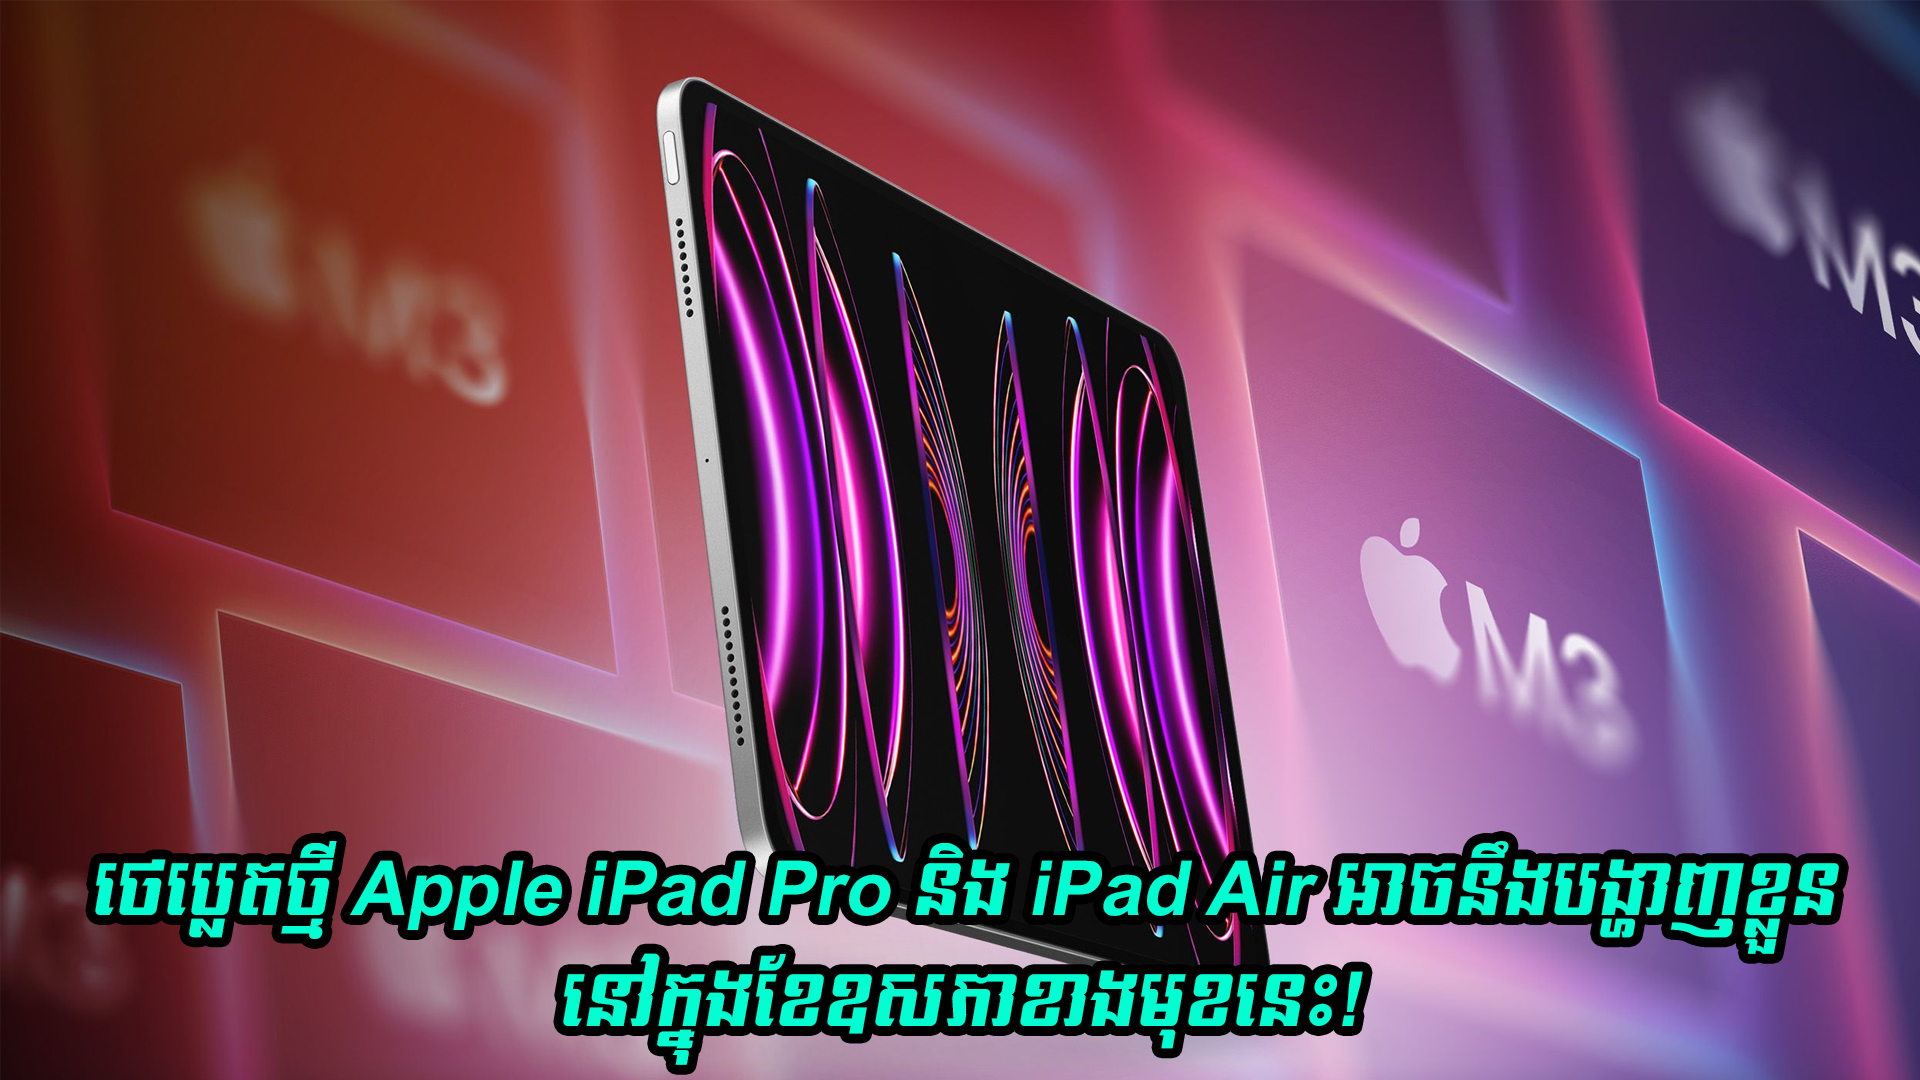 ថេប្លេតថ្មី Apple iPad Pro និង iPad Air អាចនឹងបង្ហាញខ្លួននៅក្នុងខែឧសភាខាងមុខនេះហើយ!